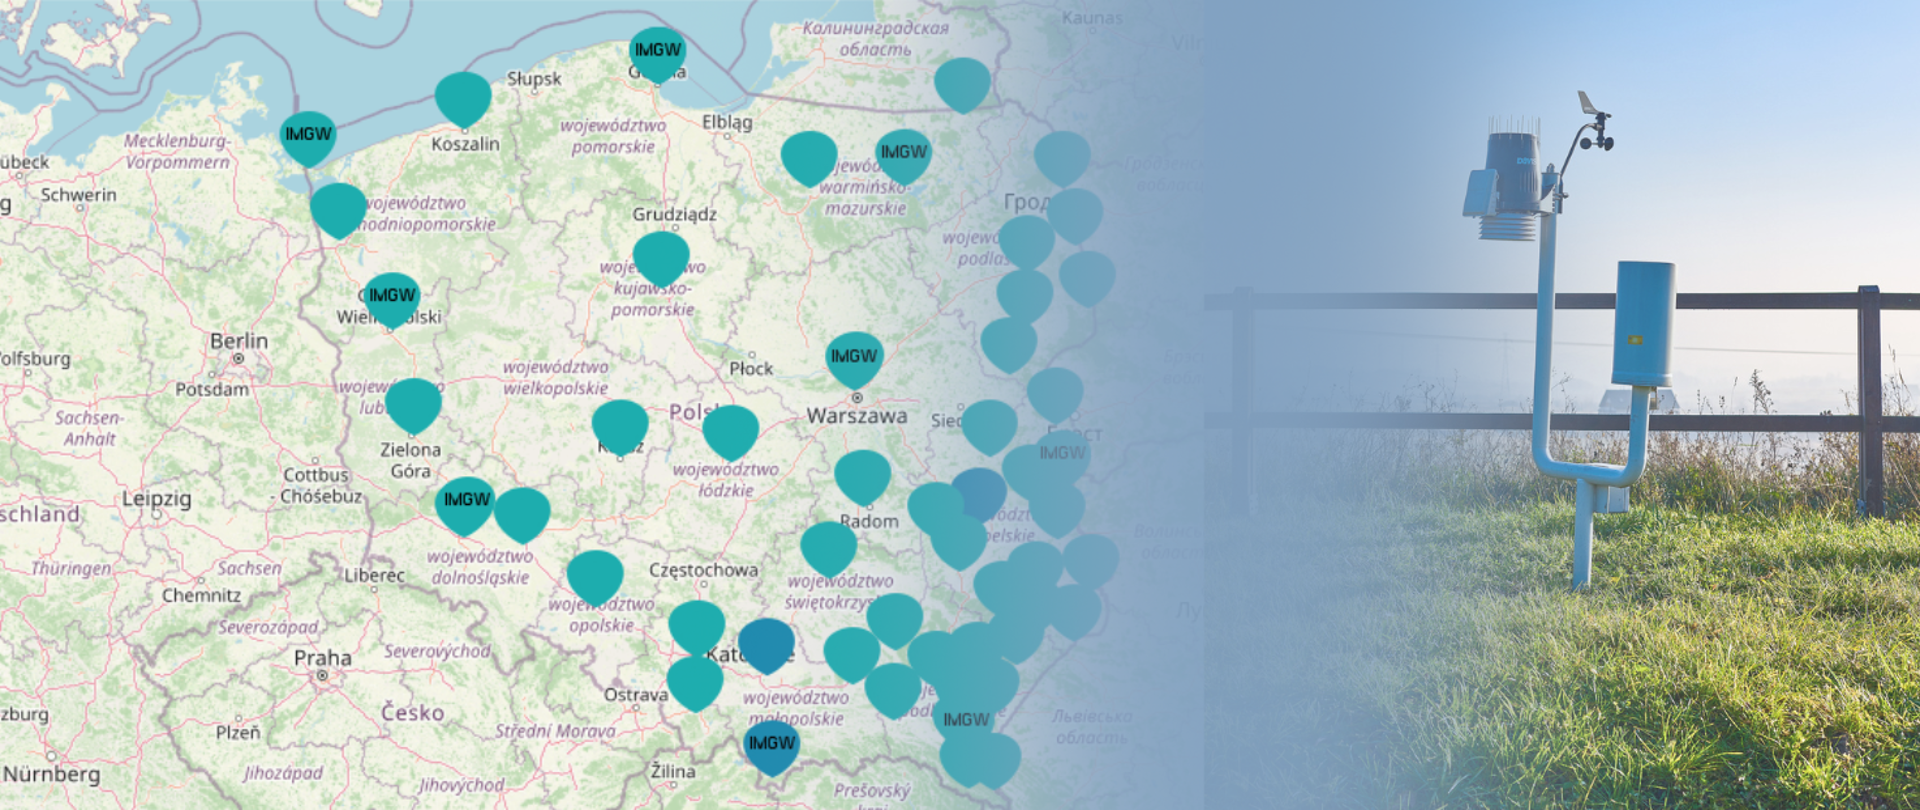 Mapa Polski z zaznaczonymi niebieskimi plamkami - stacjami wczesnego wykrywania skażeń promieniotwórczych. Obok zdjęcie stacji zainstalowanej na zielonej trawie. W tle drewniany płot.